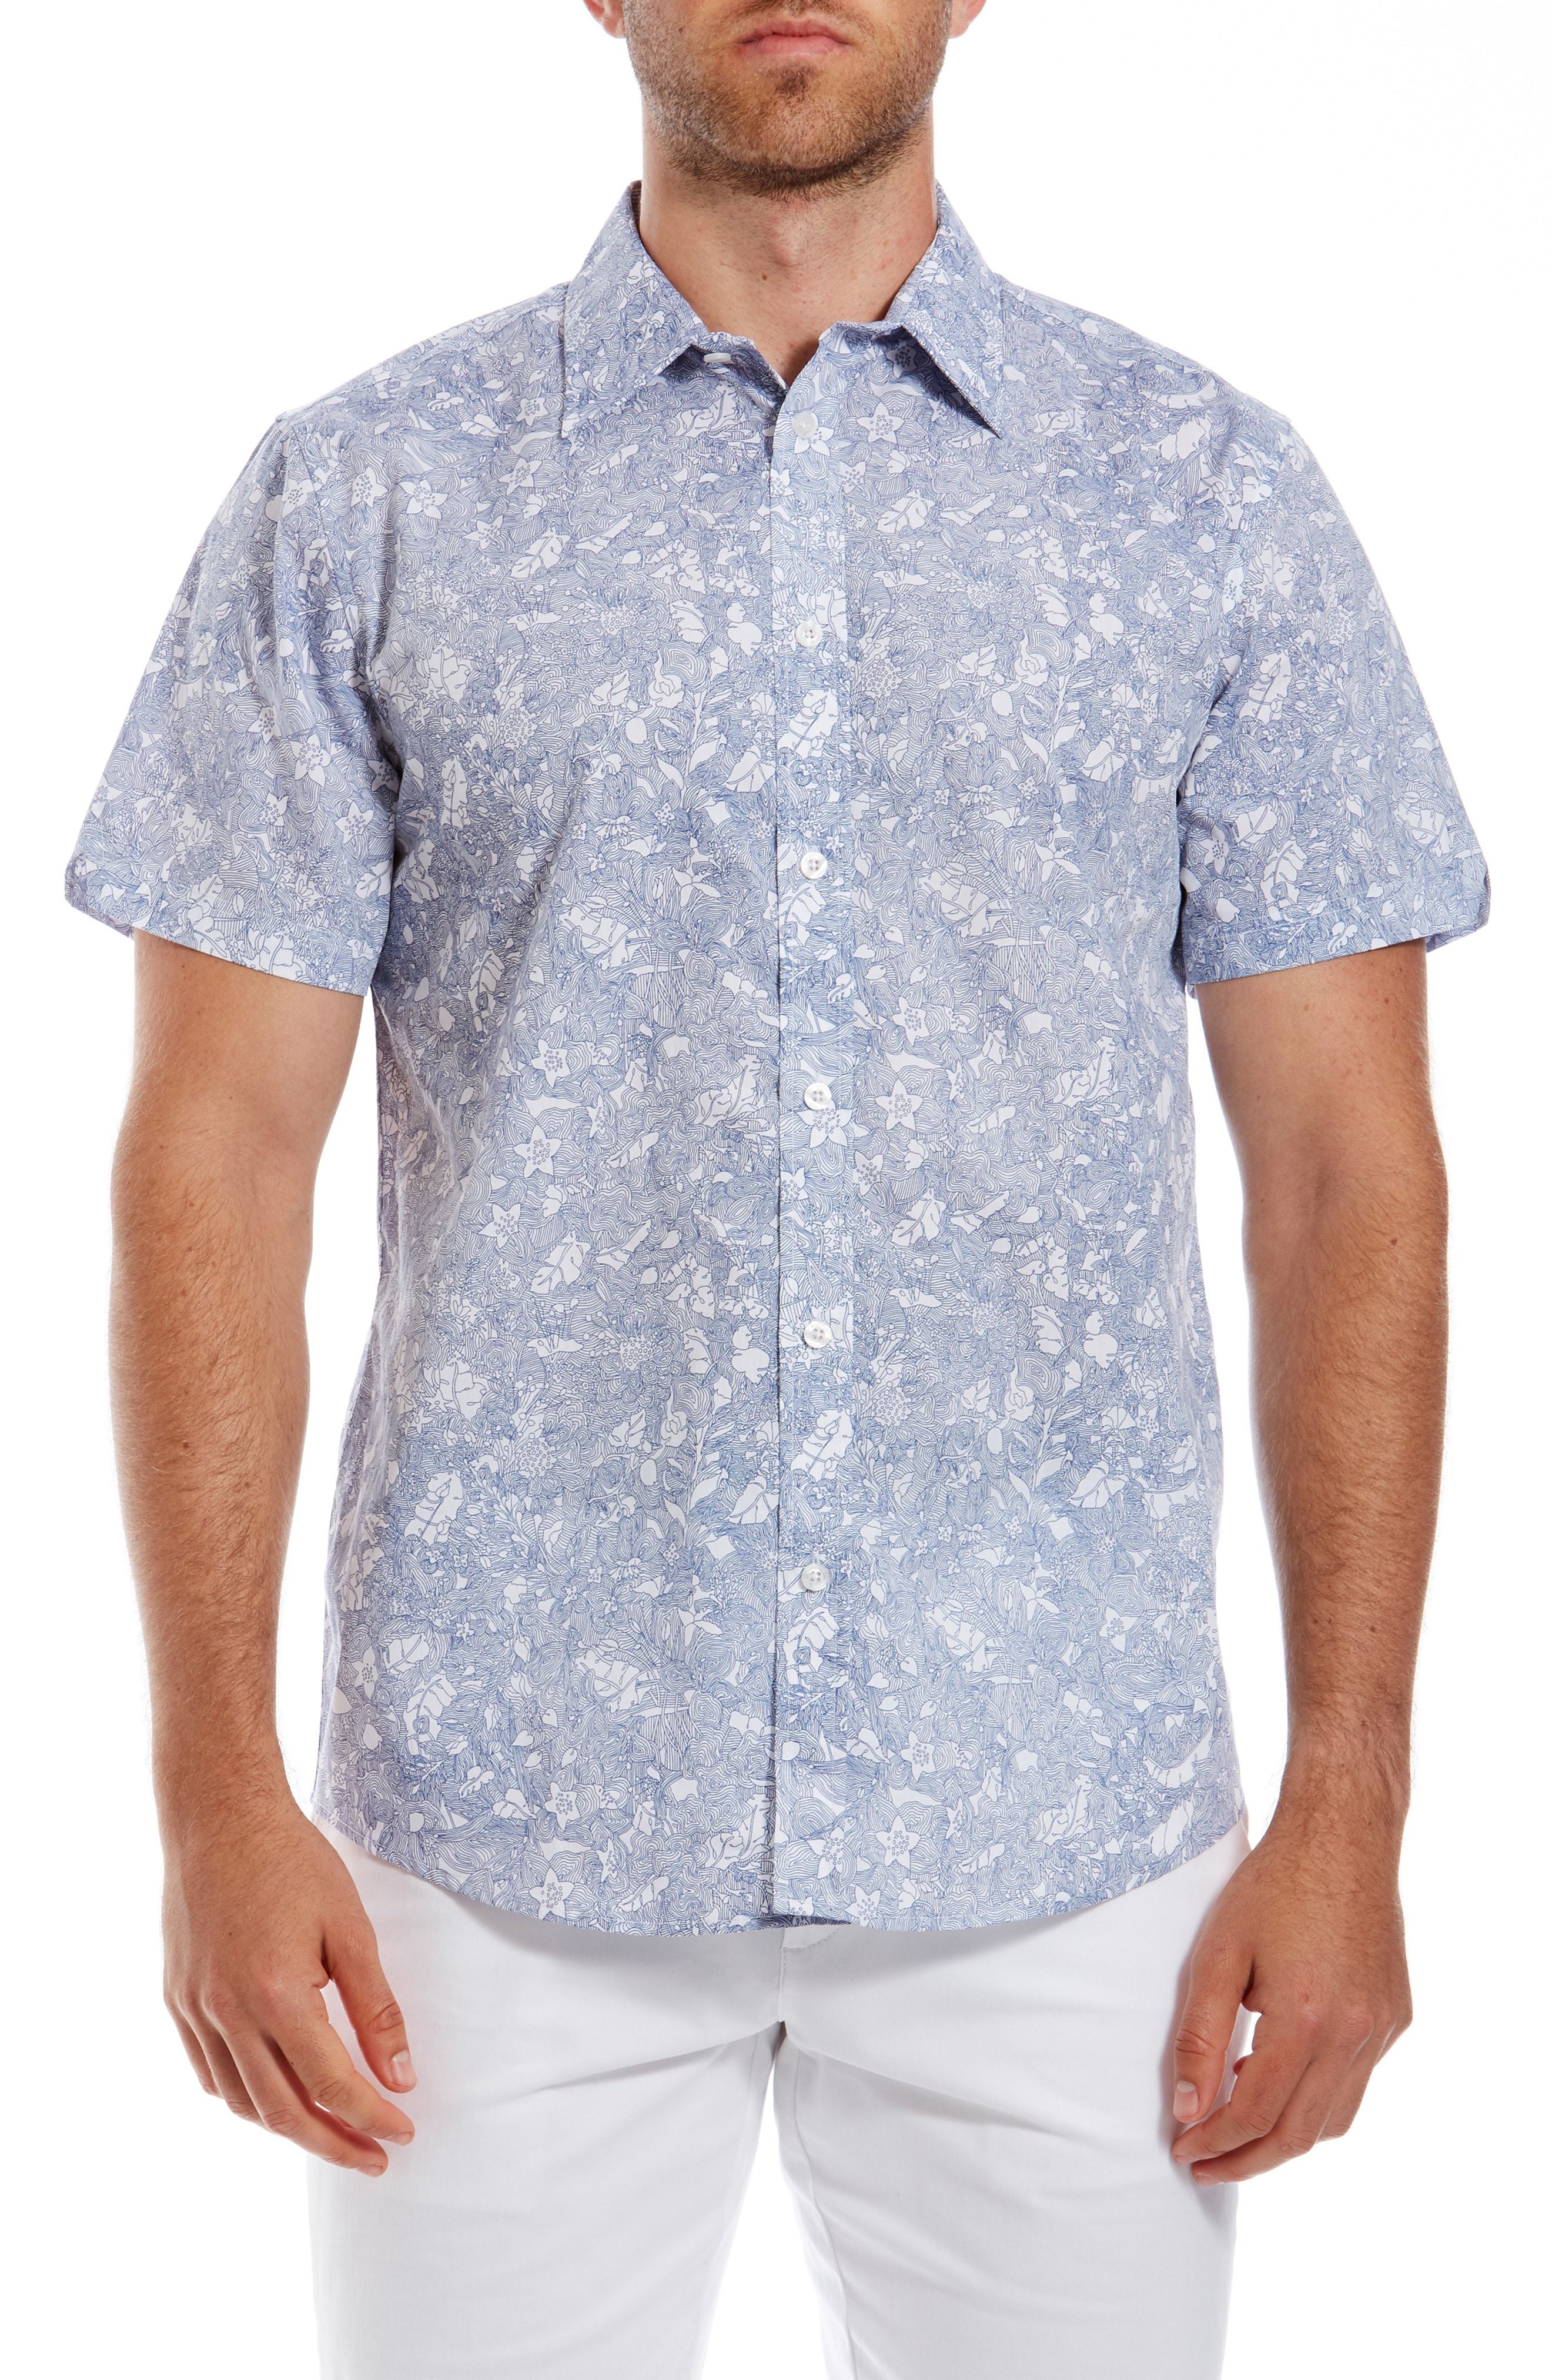 Ben Sherman Linear Floral Print Short Sleeve Sport Shirt, $59 